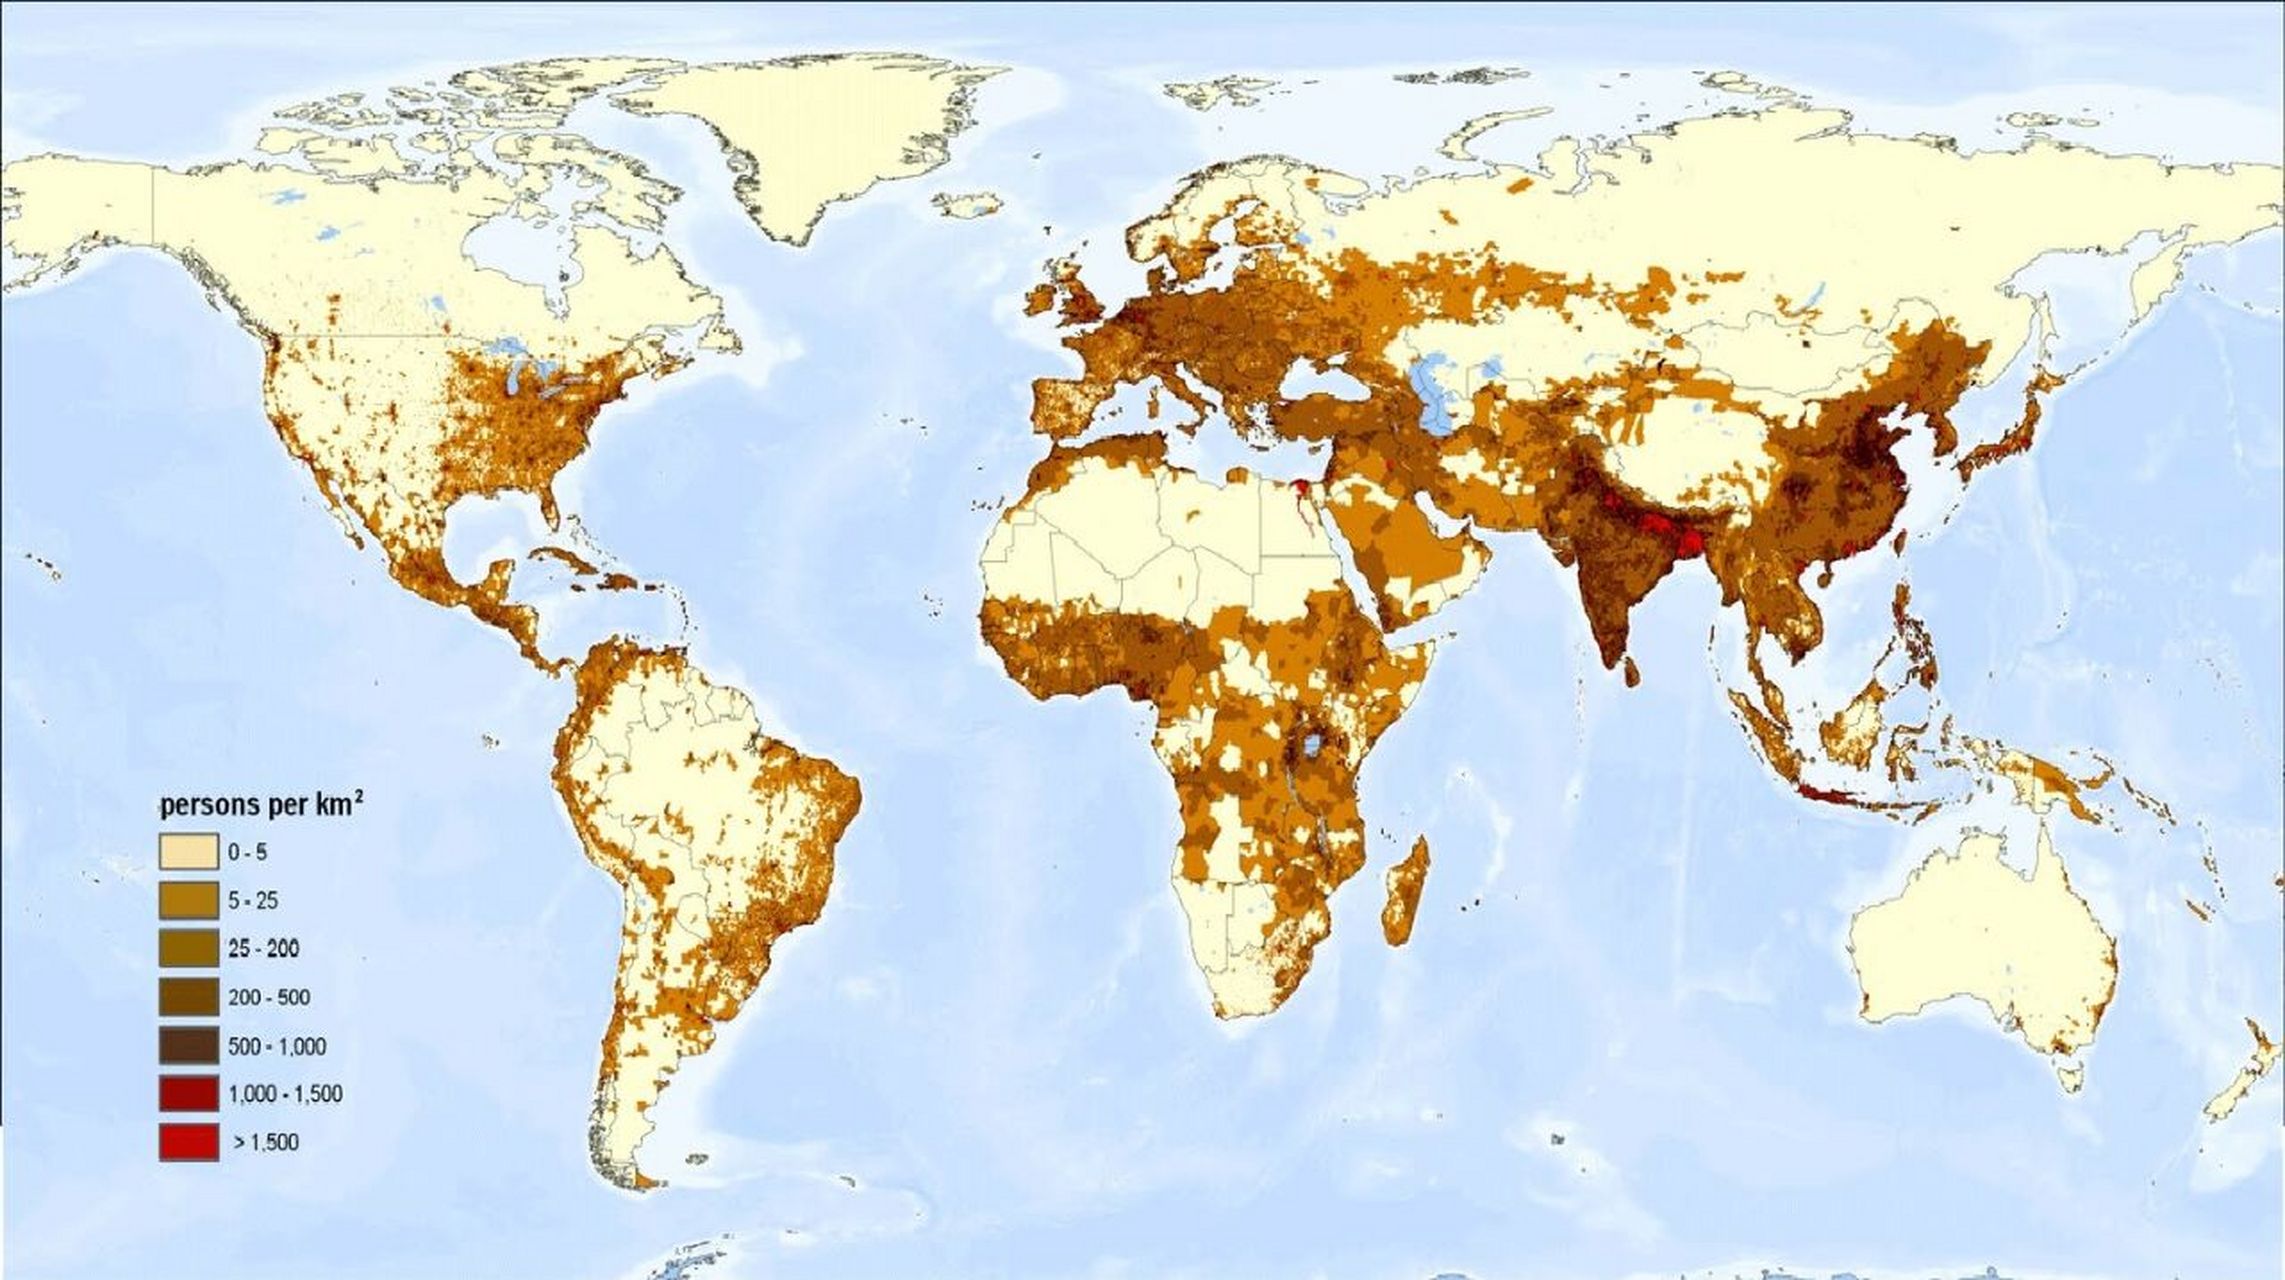 世界人口密度分布图 世界人口分布极不均匀,亚洲的东亚东部,东南亚和